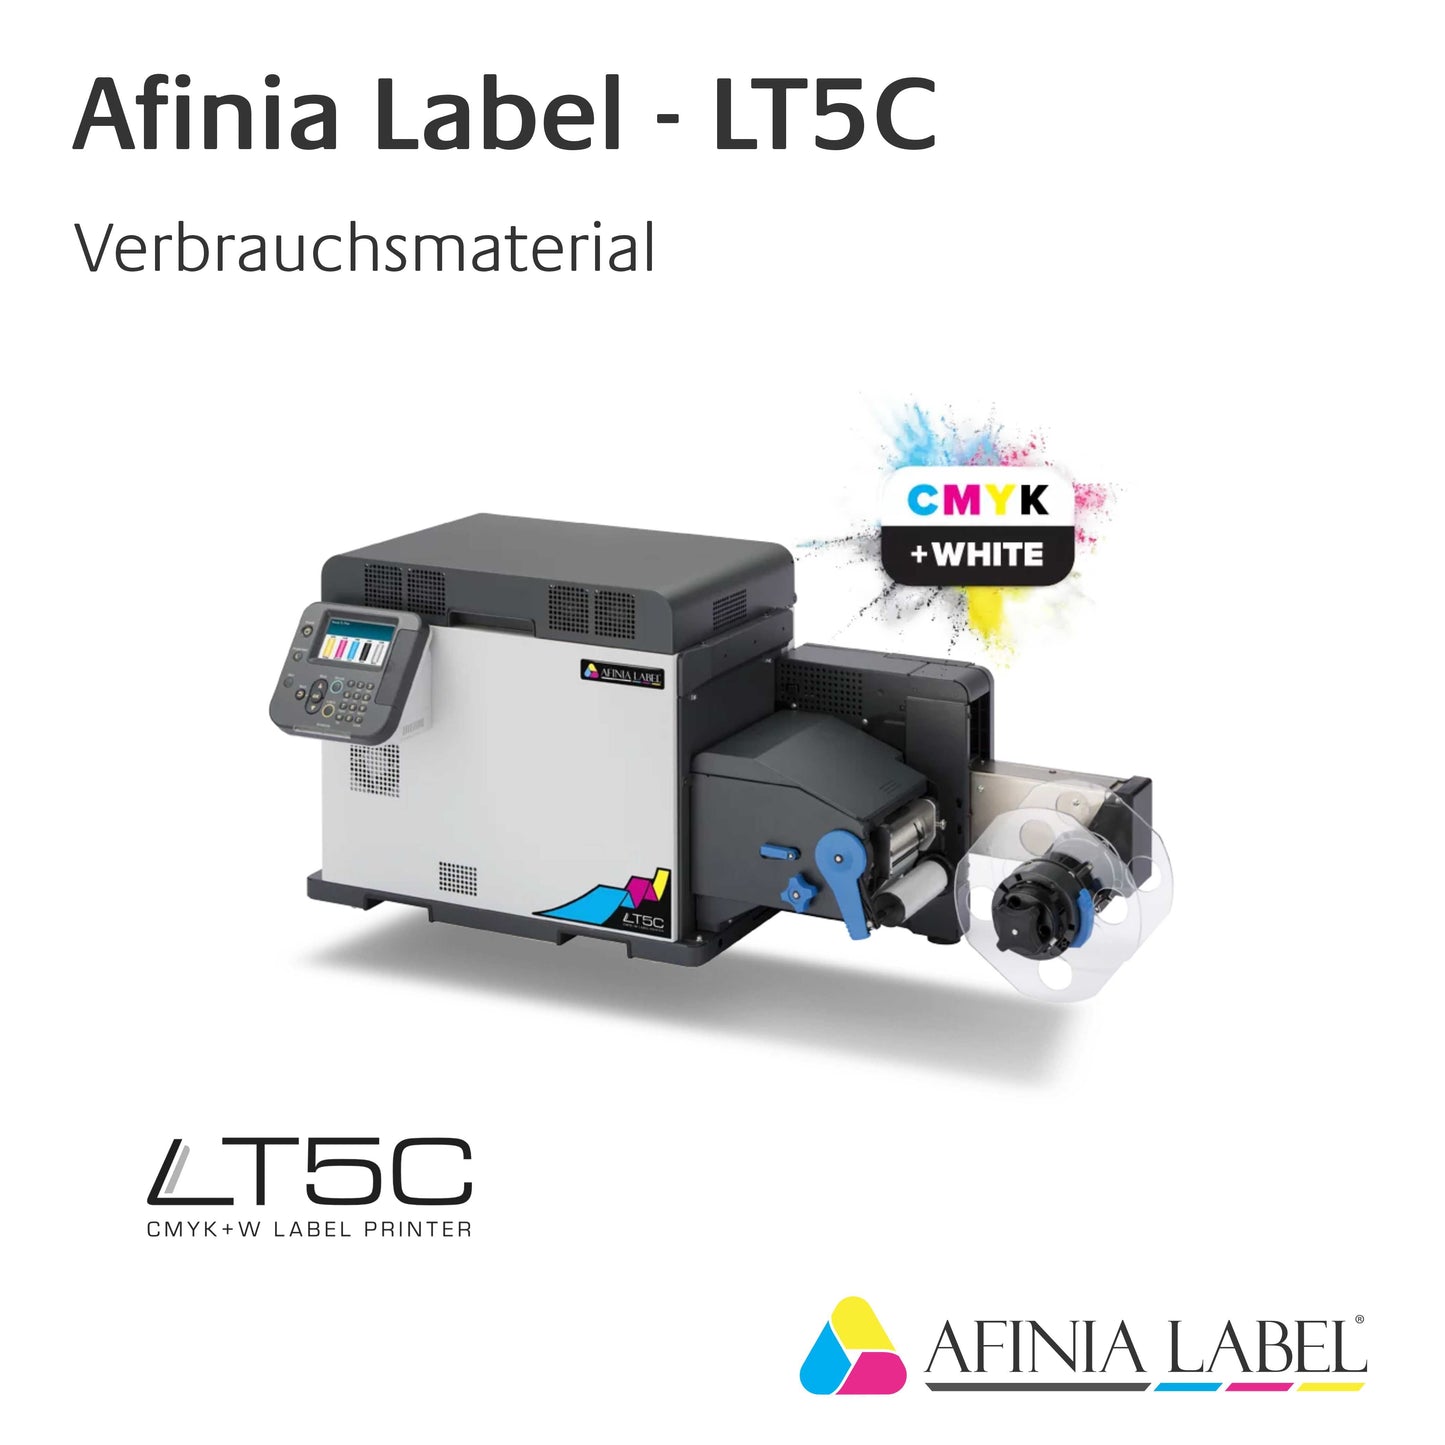 Afinia Label LT5C - Toner / Trommel - Magenta